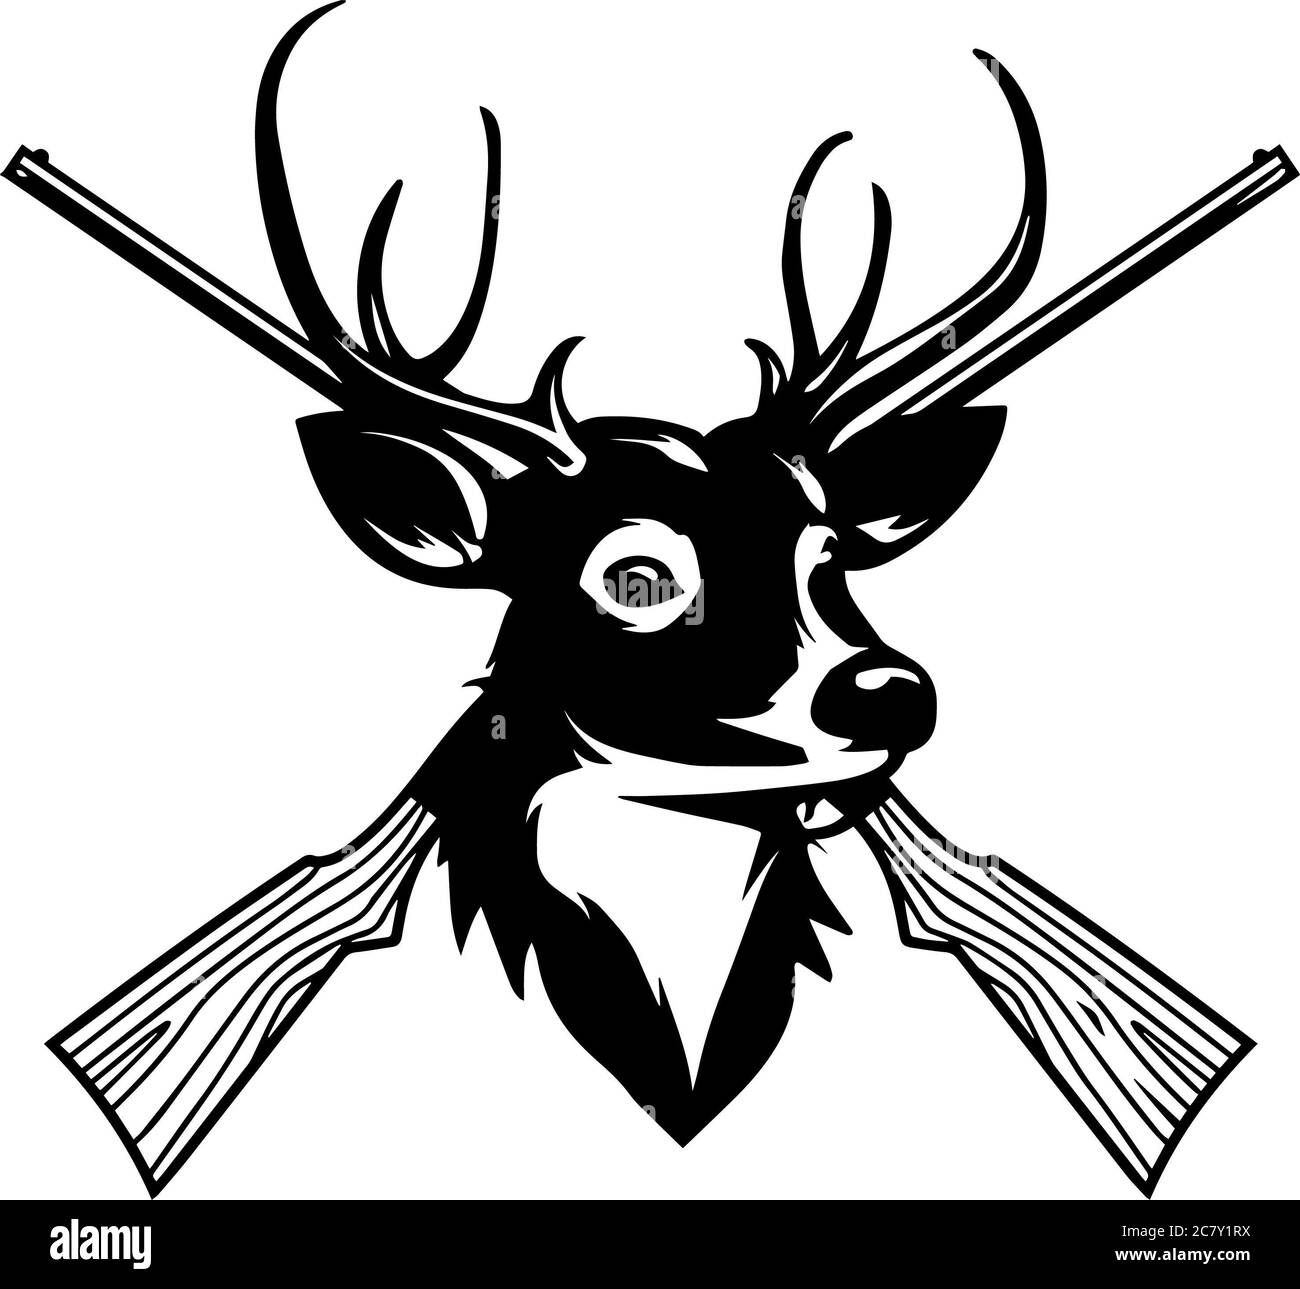 Immagine grafica in scala di grigi di un ritratto di un cervo e. pistole sullo sfondo Foto Stock